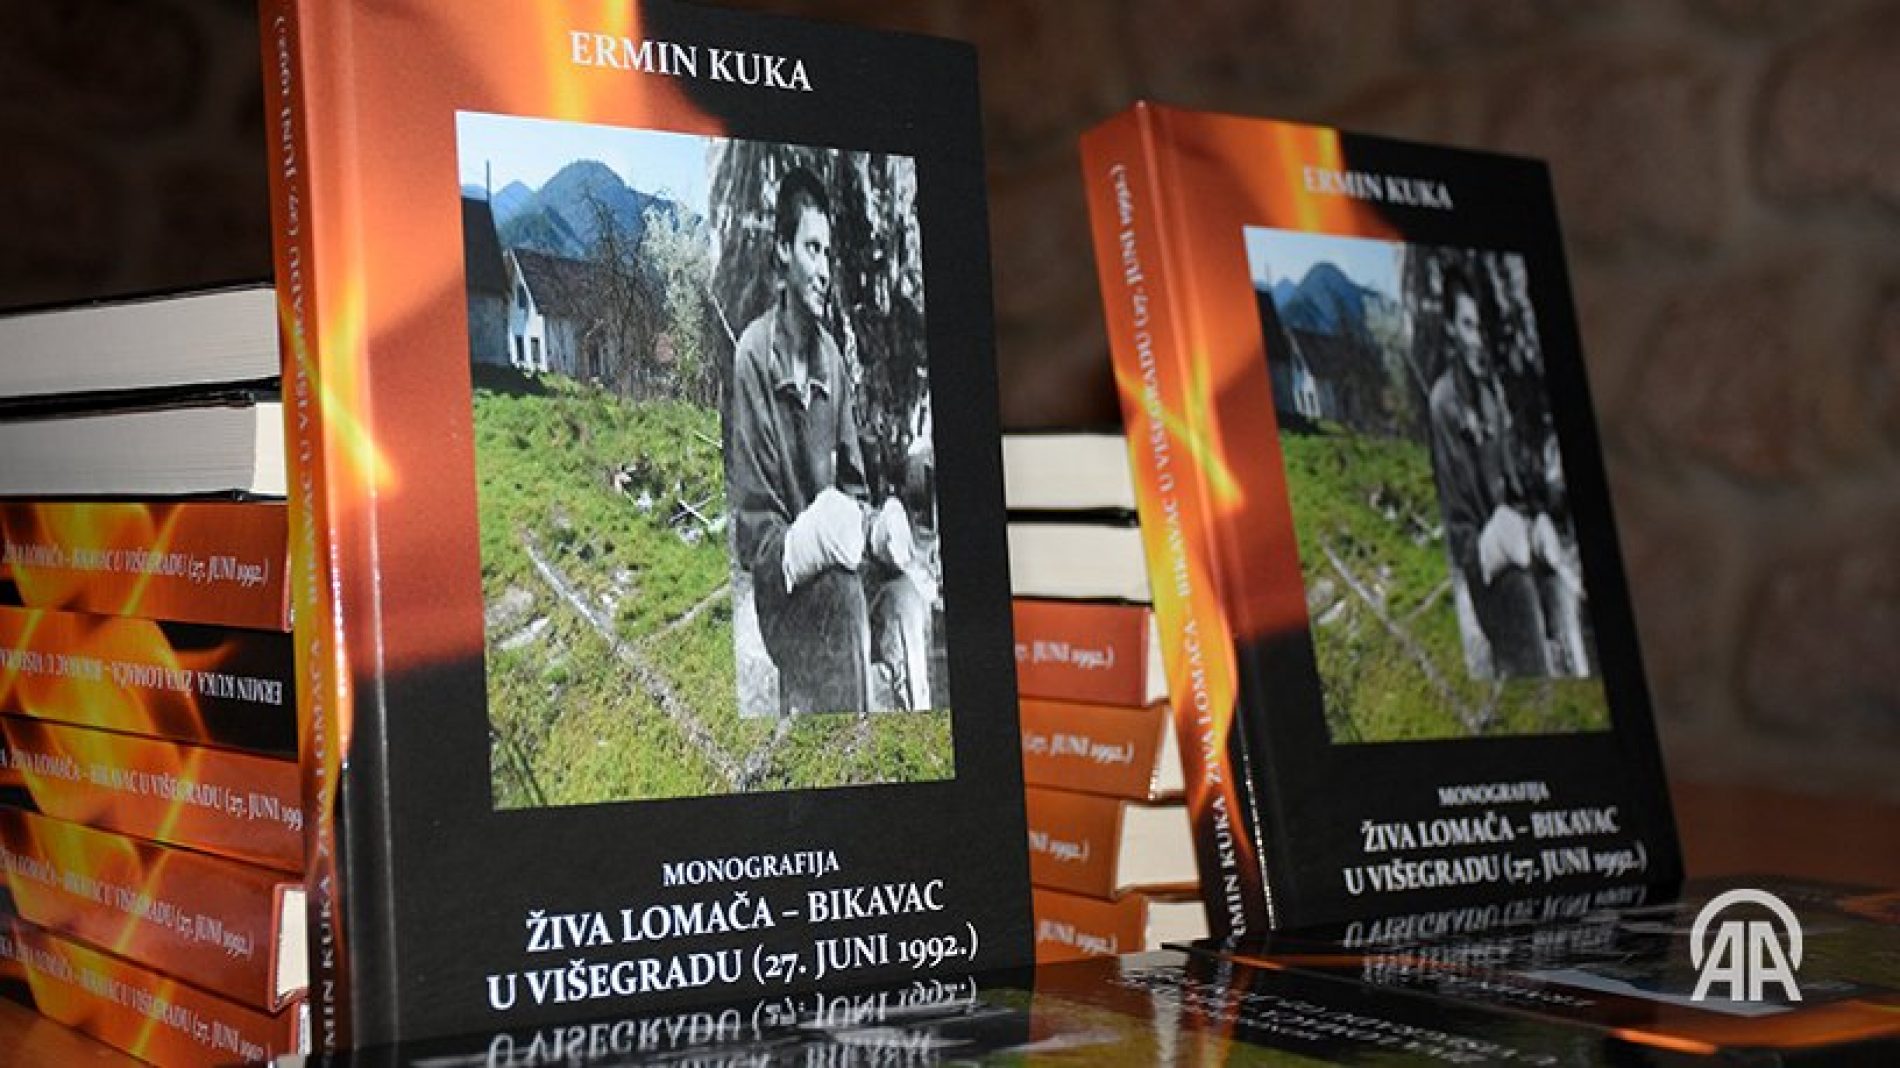 U Sarajevu promovirana monografija “Živa lomača – Bikavac u Višegradu (27. juni 1992.)”